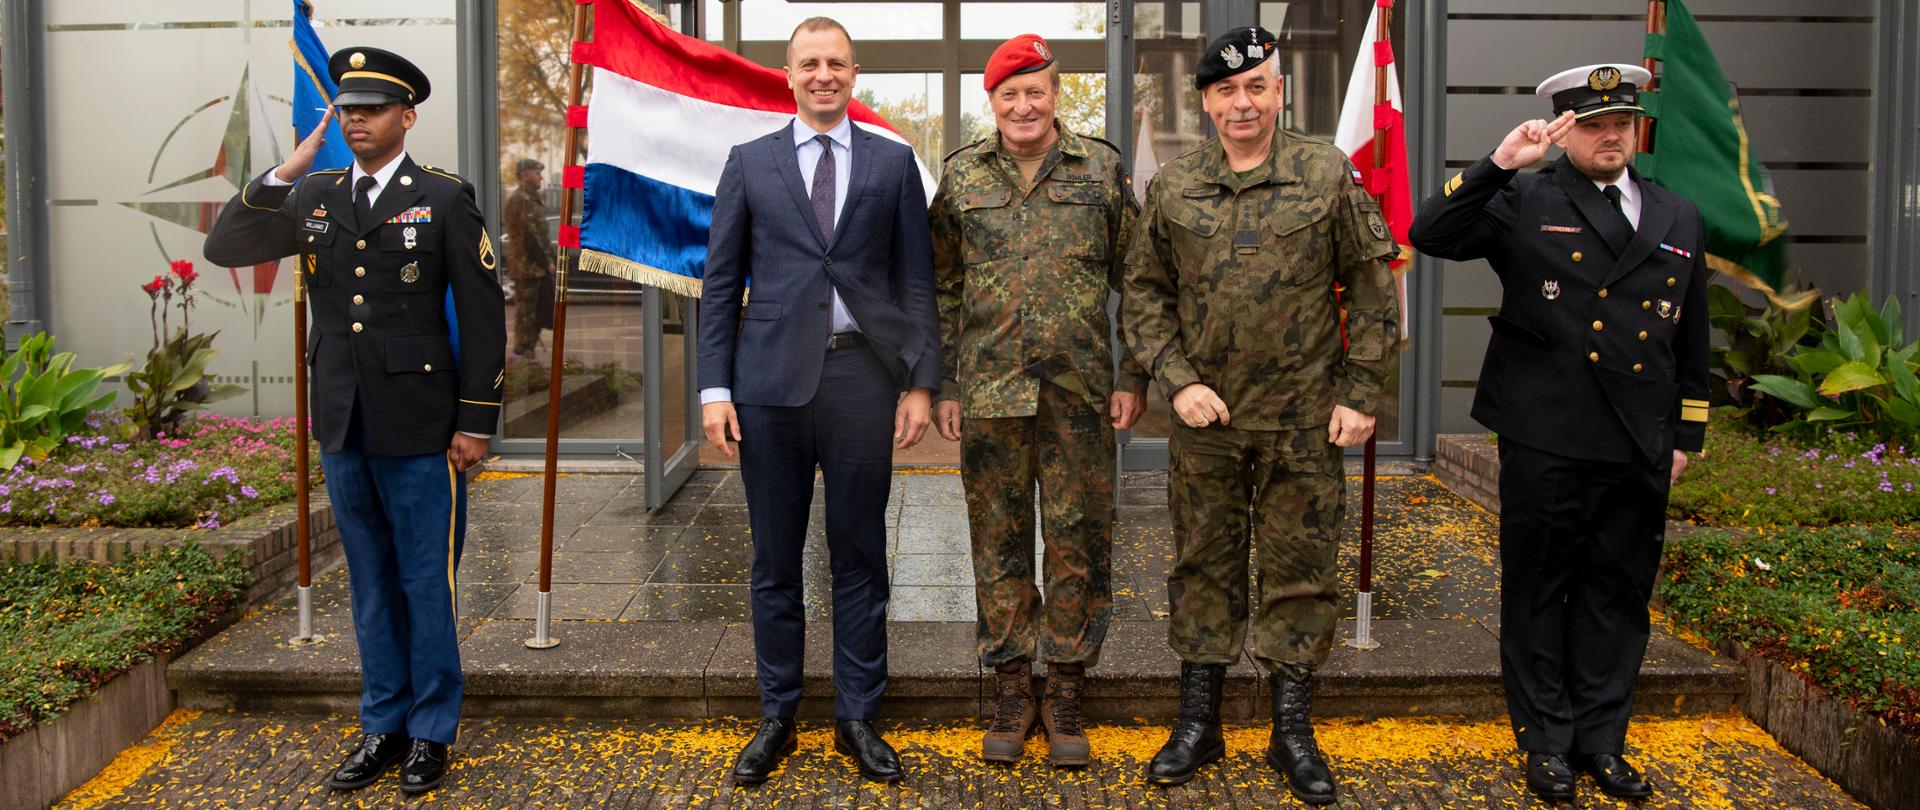 Wizyta Ambasadora T. Szatkowskiego w w Sojuszniczym Dowództwie Sił Połączonych w Brunssum, 2019